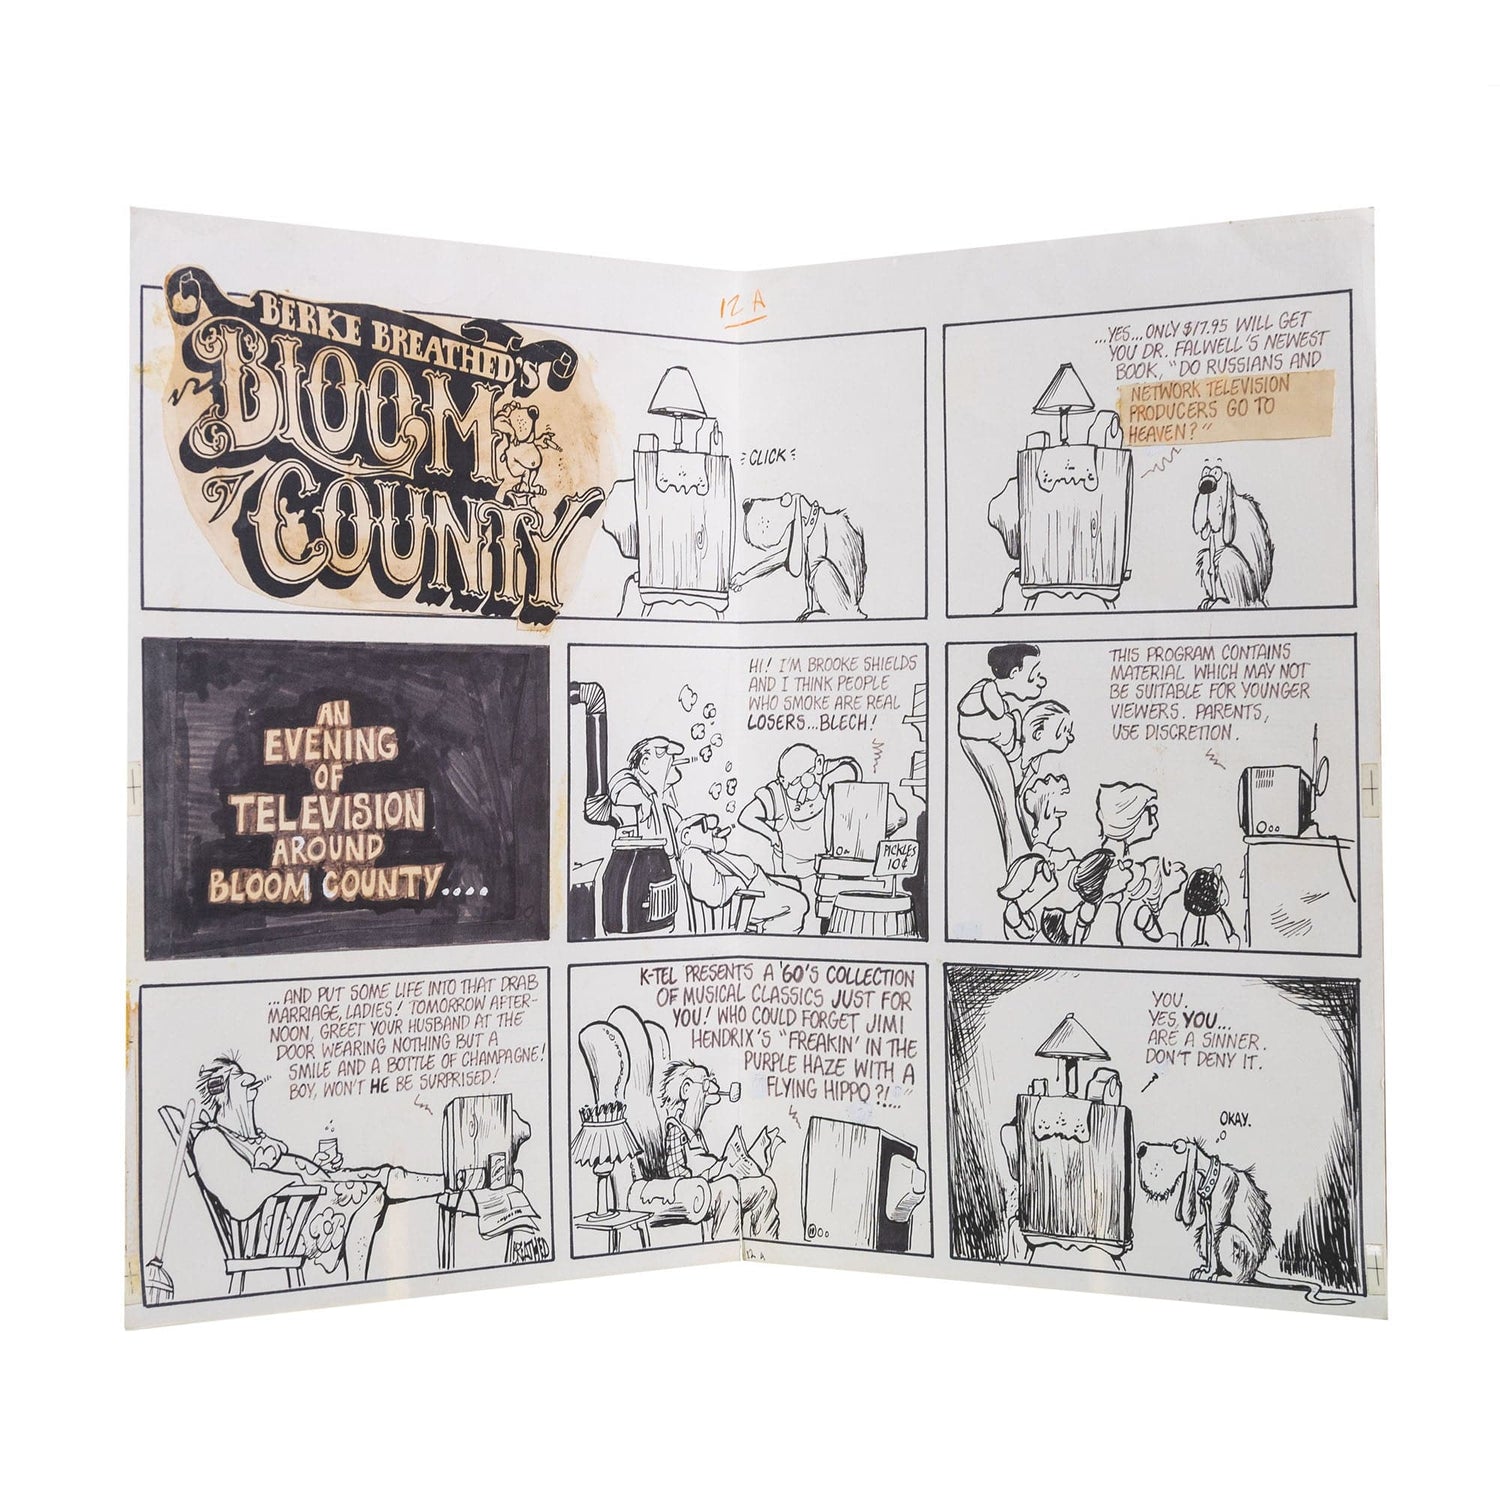 Berke Breathed; Bloom County Comic Strip ZOOM